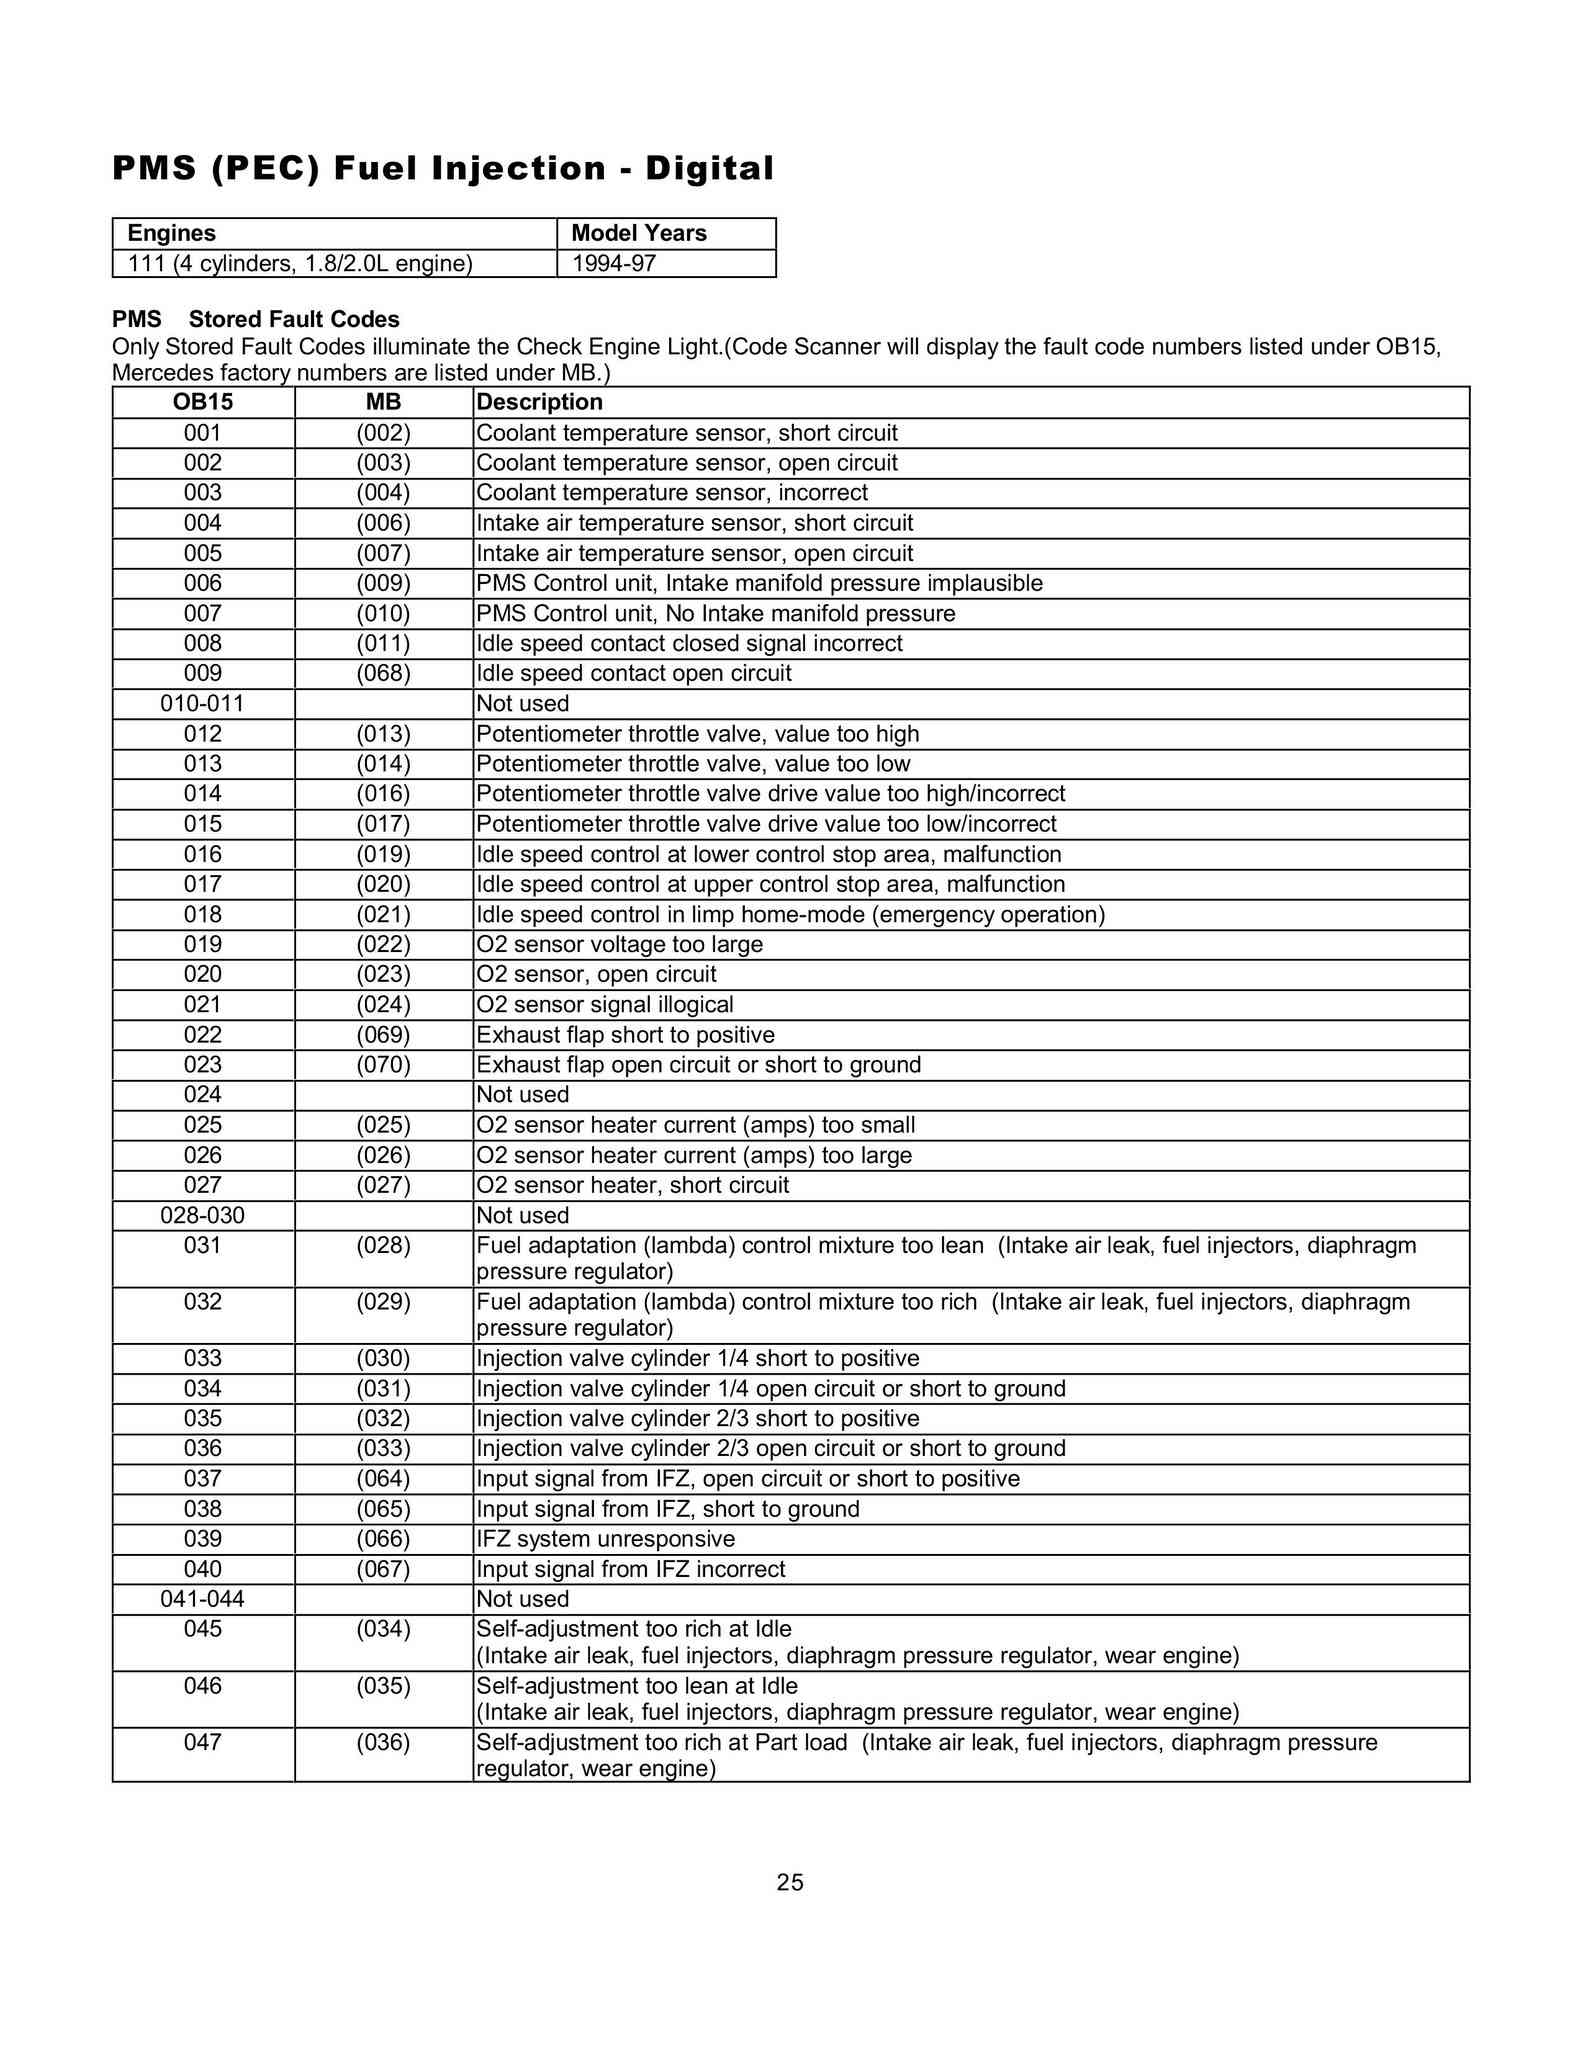 Lista de Códigos de falhas (fault codes) Mercedes-Benz 002512